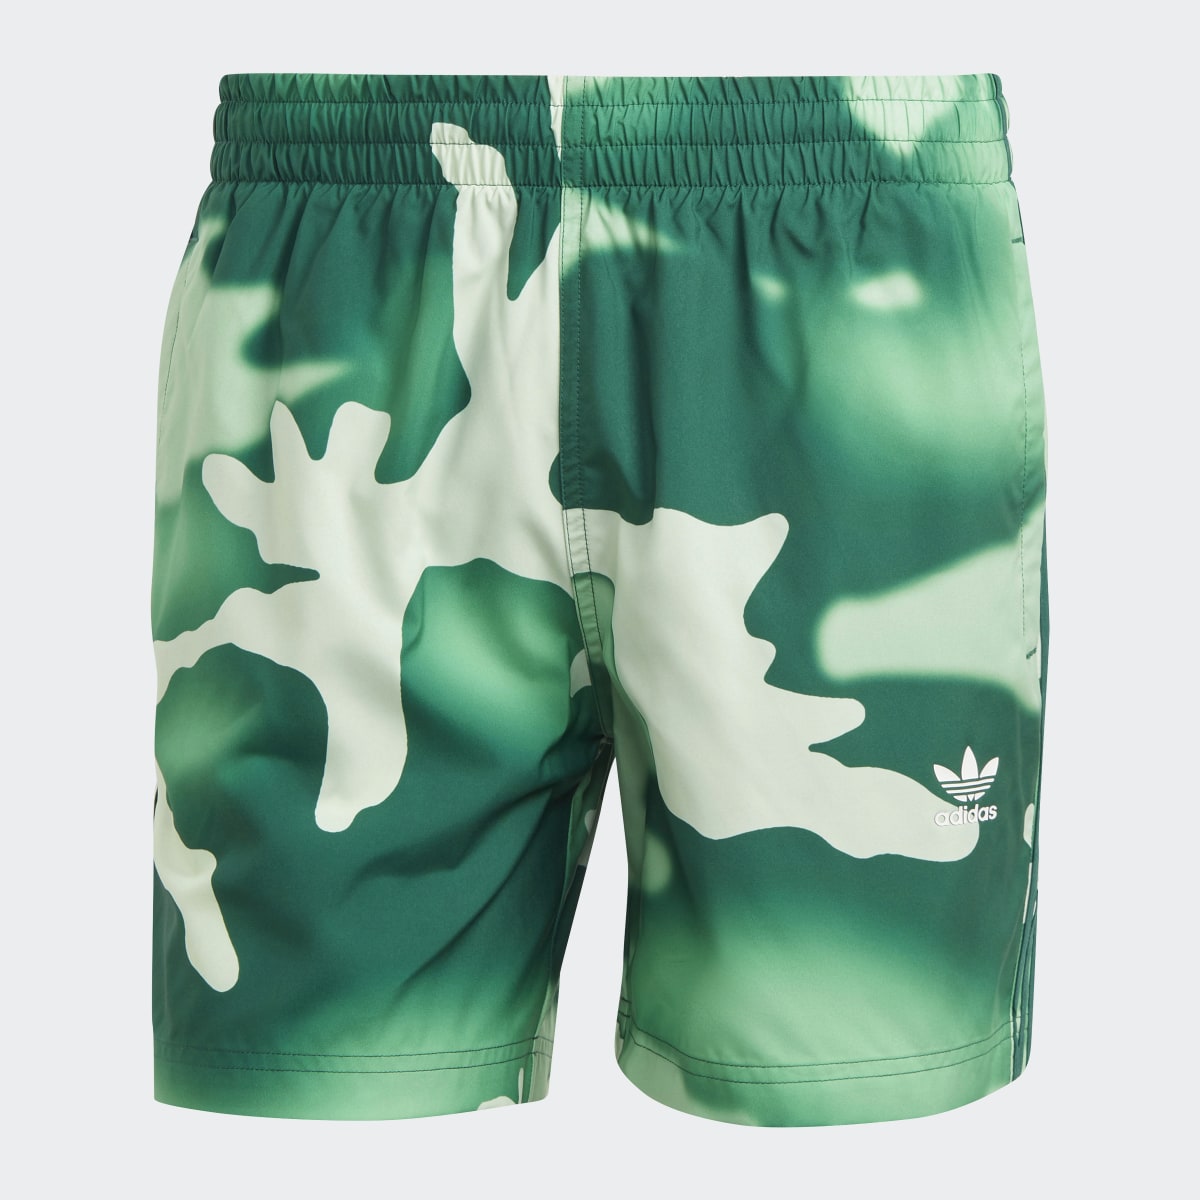 Adidas Originals Camo Swim Shorts. 4